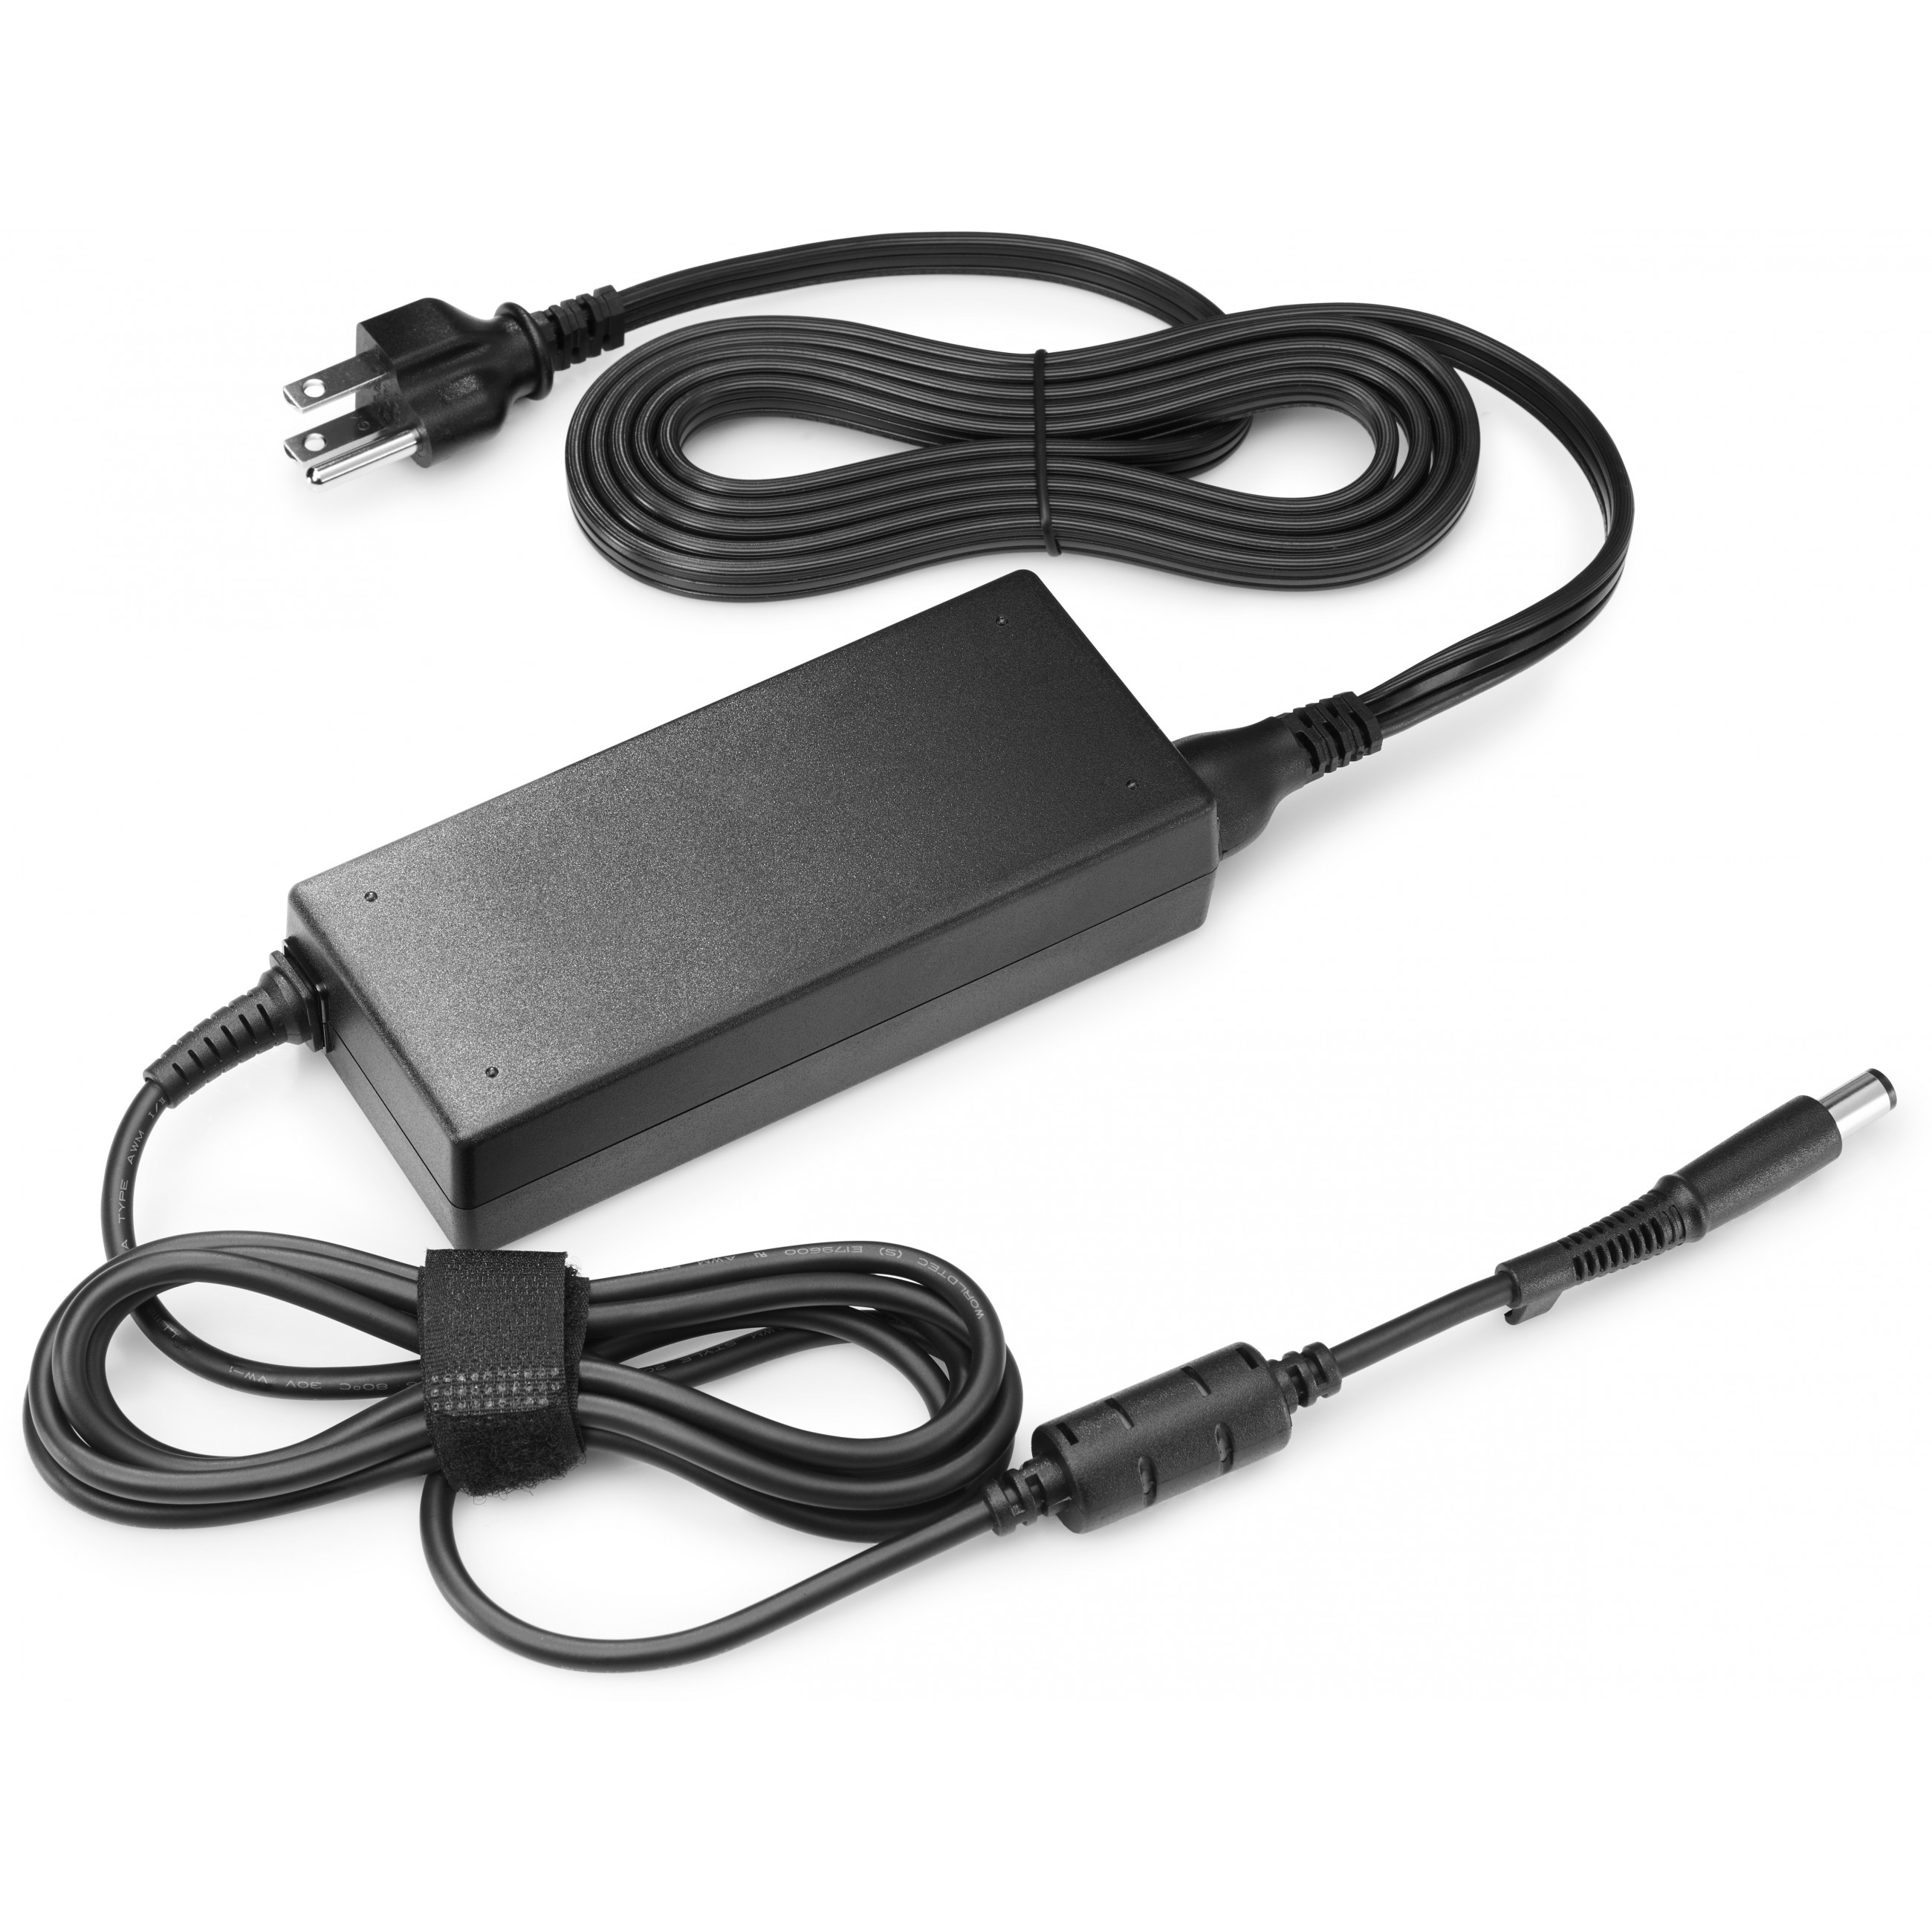 HP Desktop Mini 90w Power Supply Kit power adapter/inverter